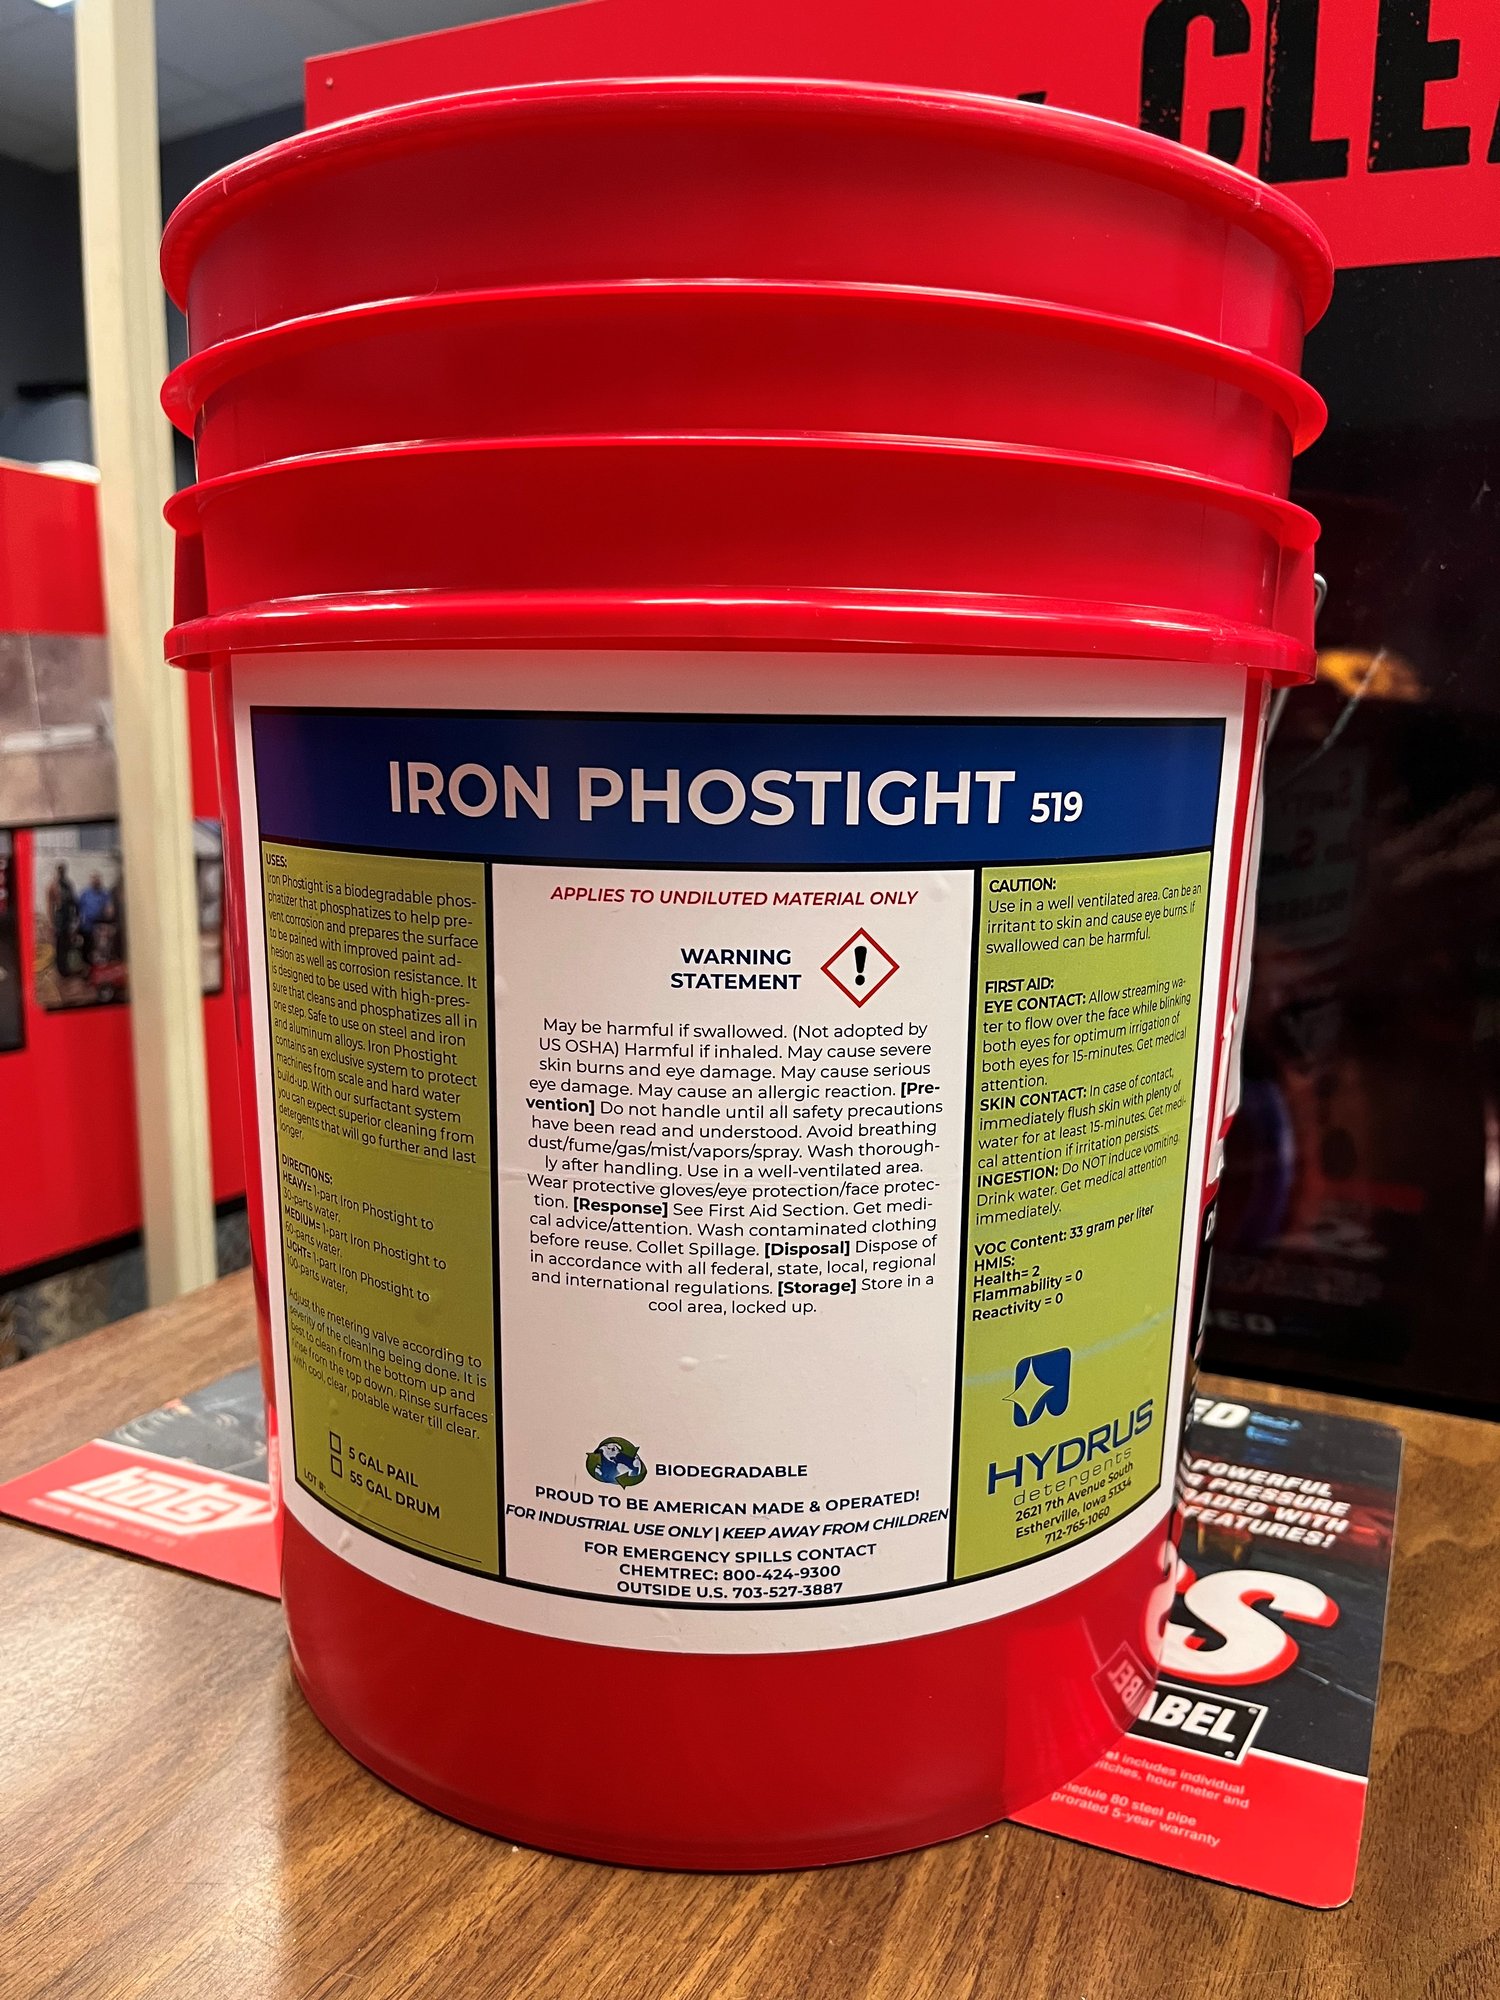 Iron Phostight 519